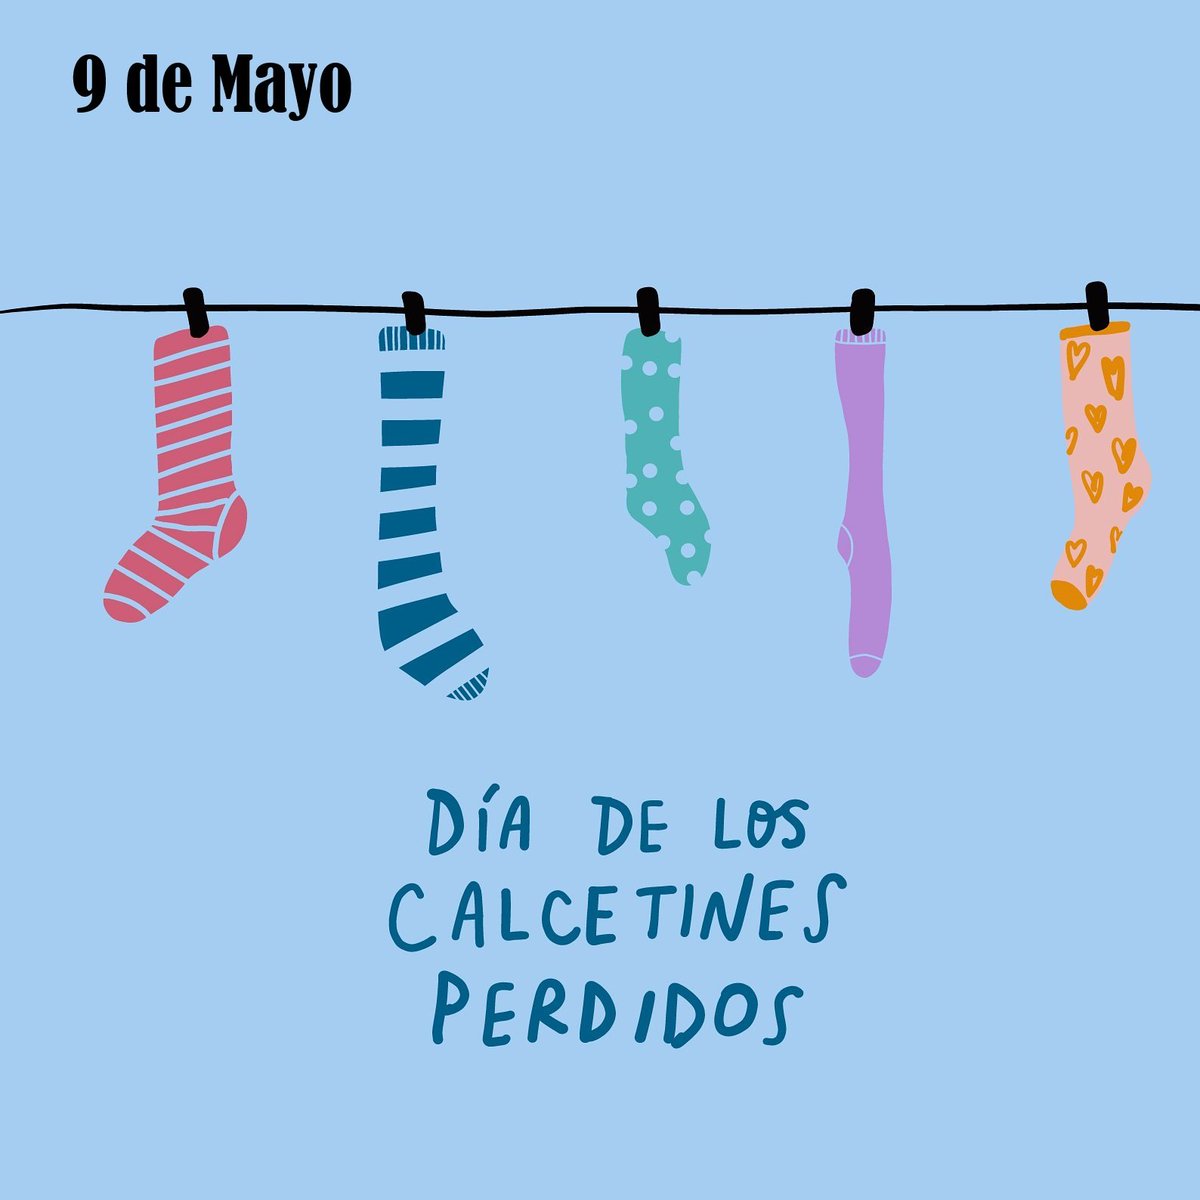 Día Mundial de los Calcetines Perdidos.

#DíaMundial #CalcetinesPerdidos #Calcetines #Efemerides #UnDíaComoHoy #AdayLikeToday #Historia